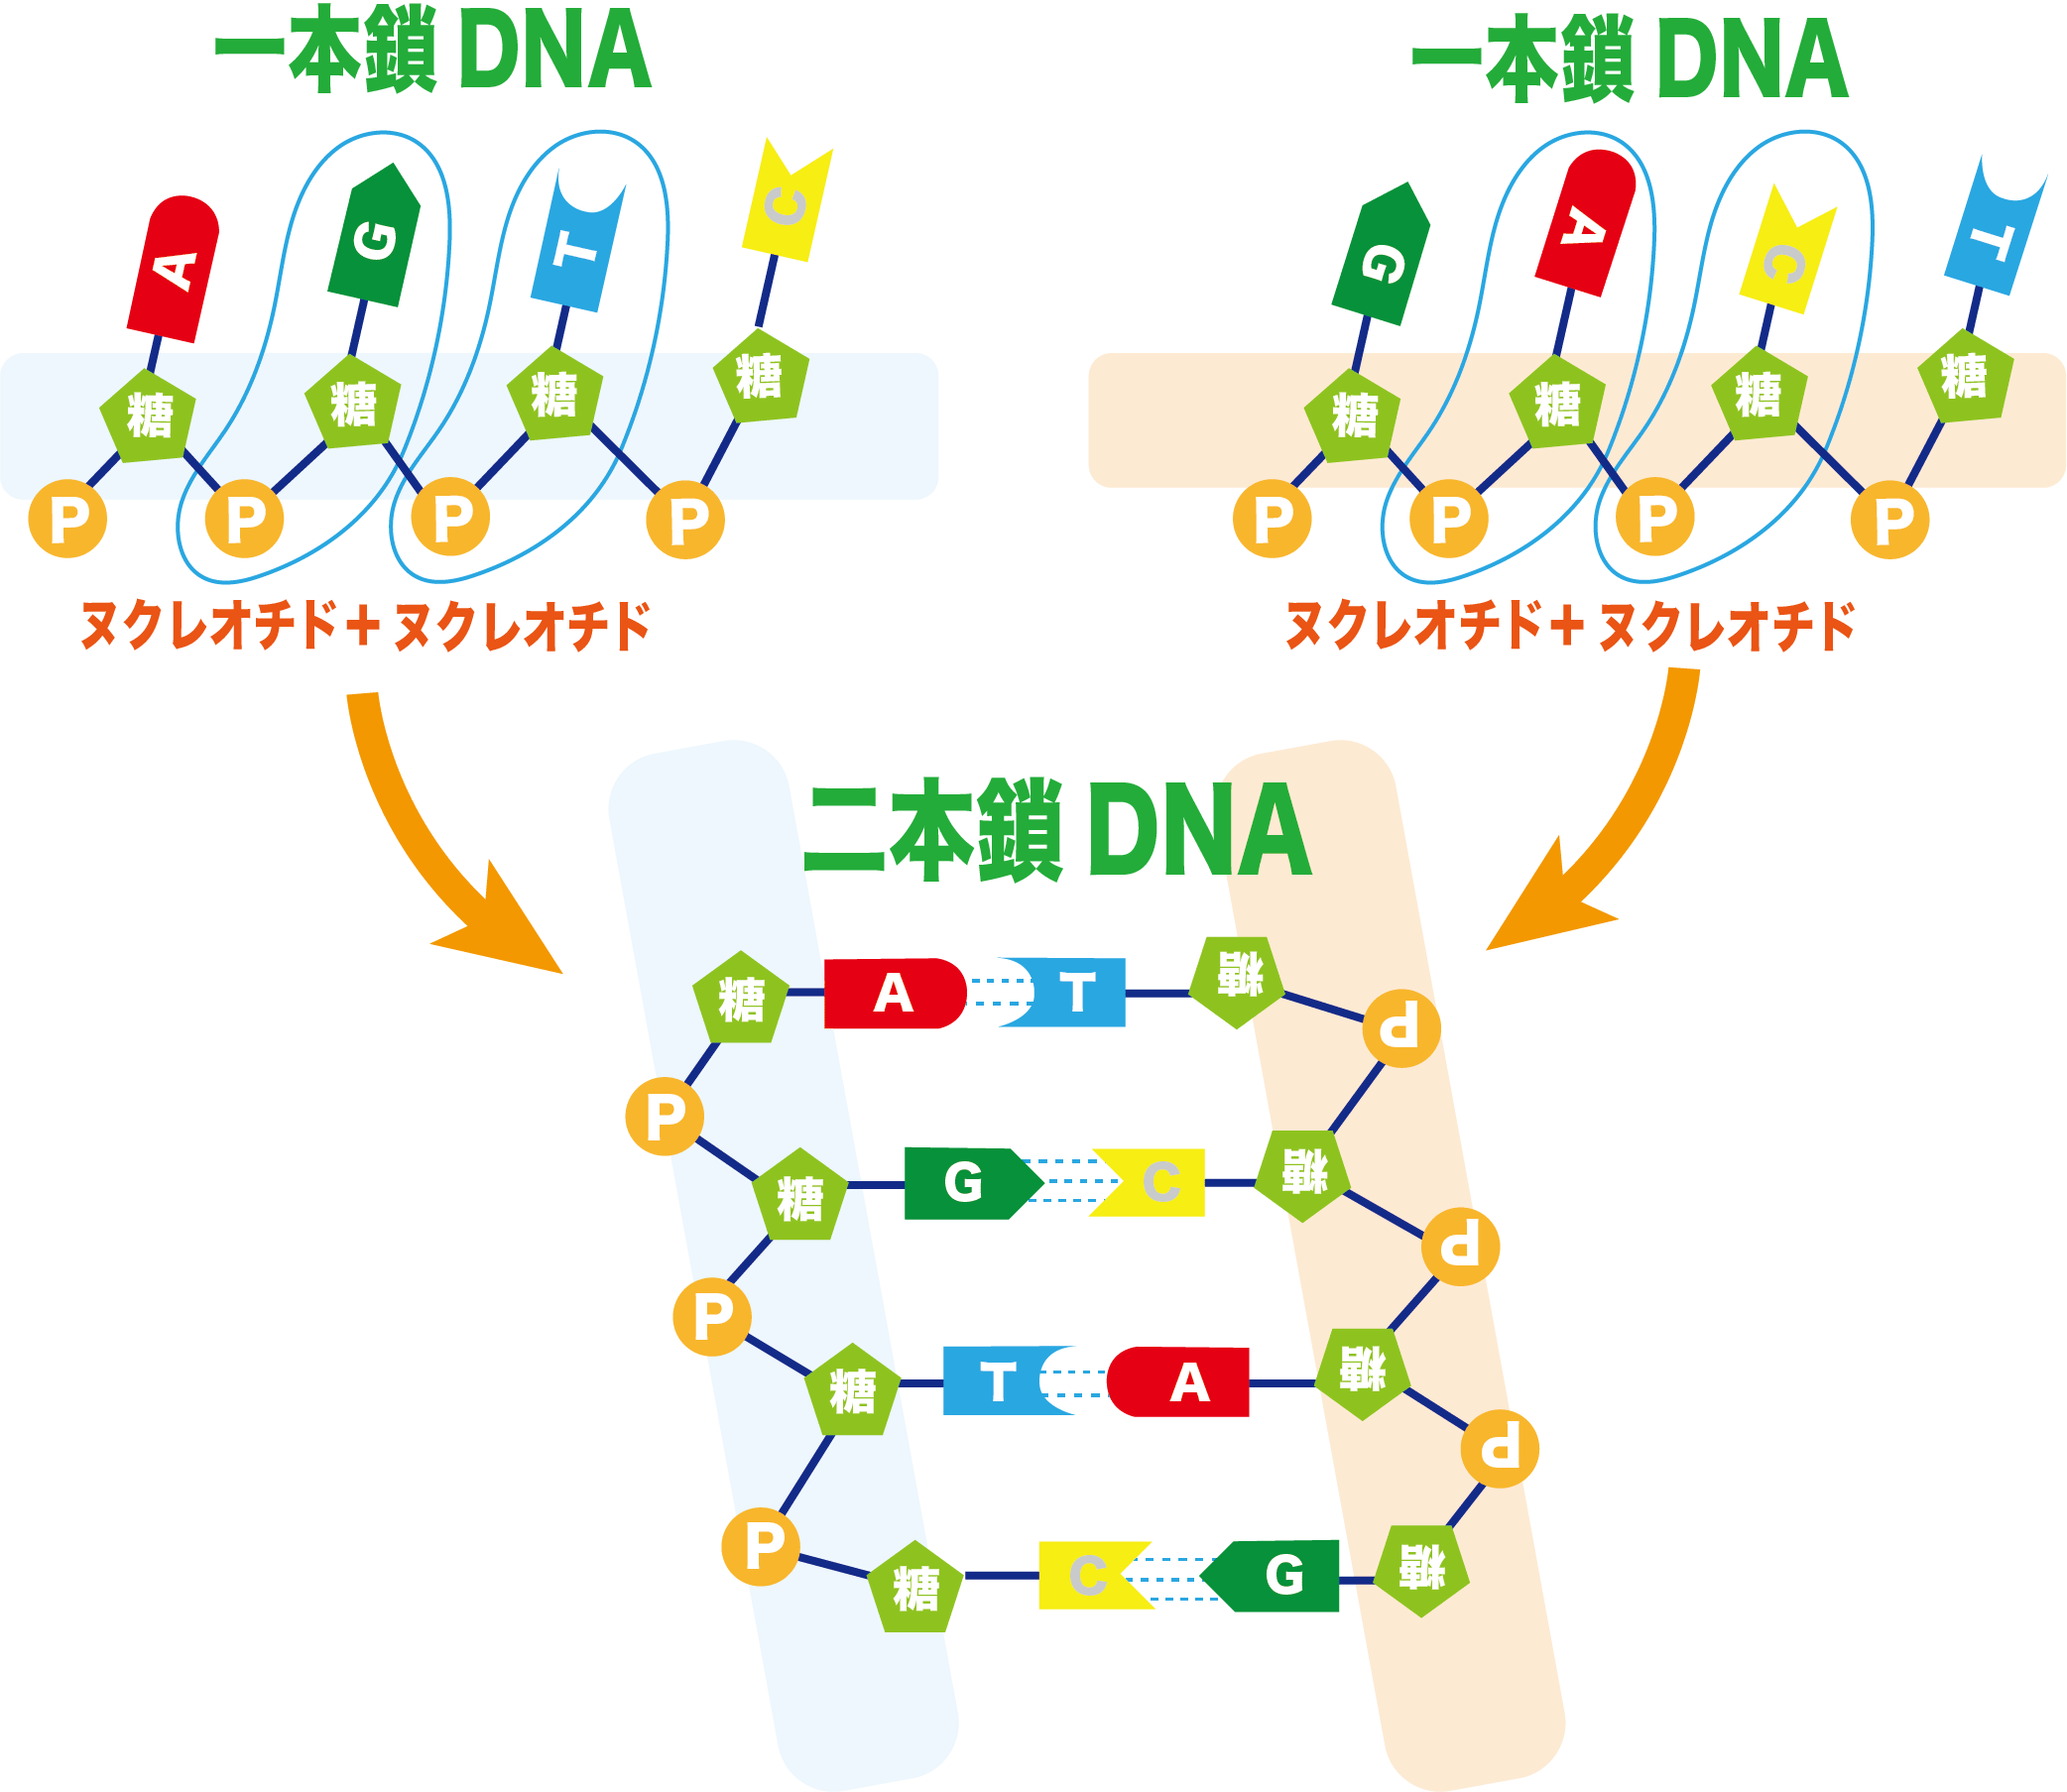 一本鎖DNAが塩基で繋がり二本鎖DNAになる